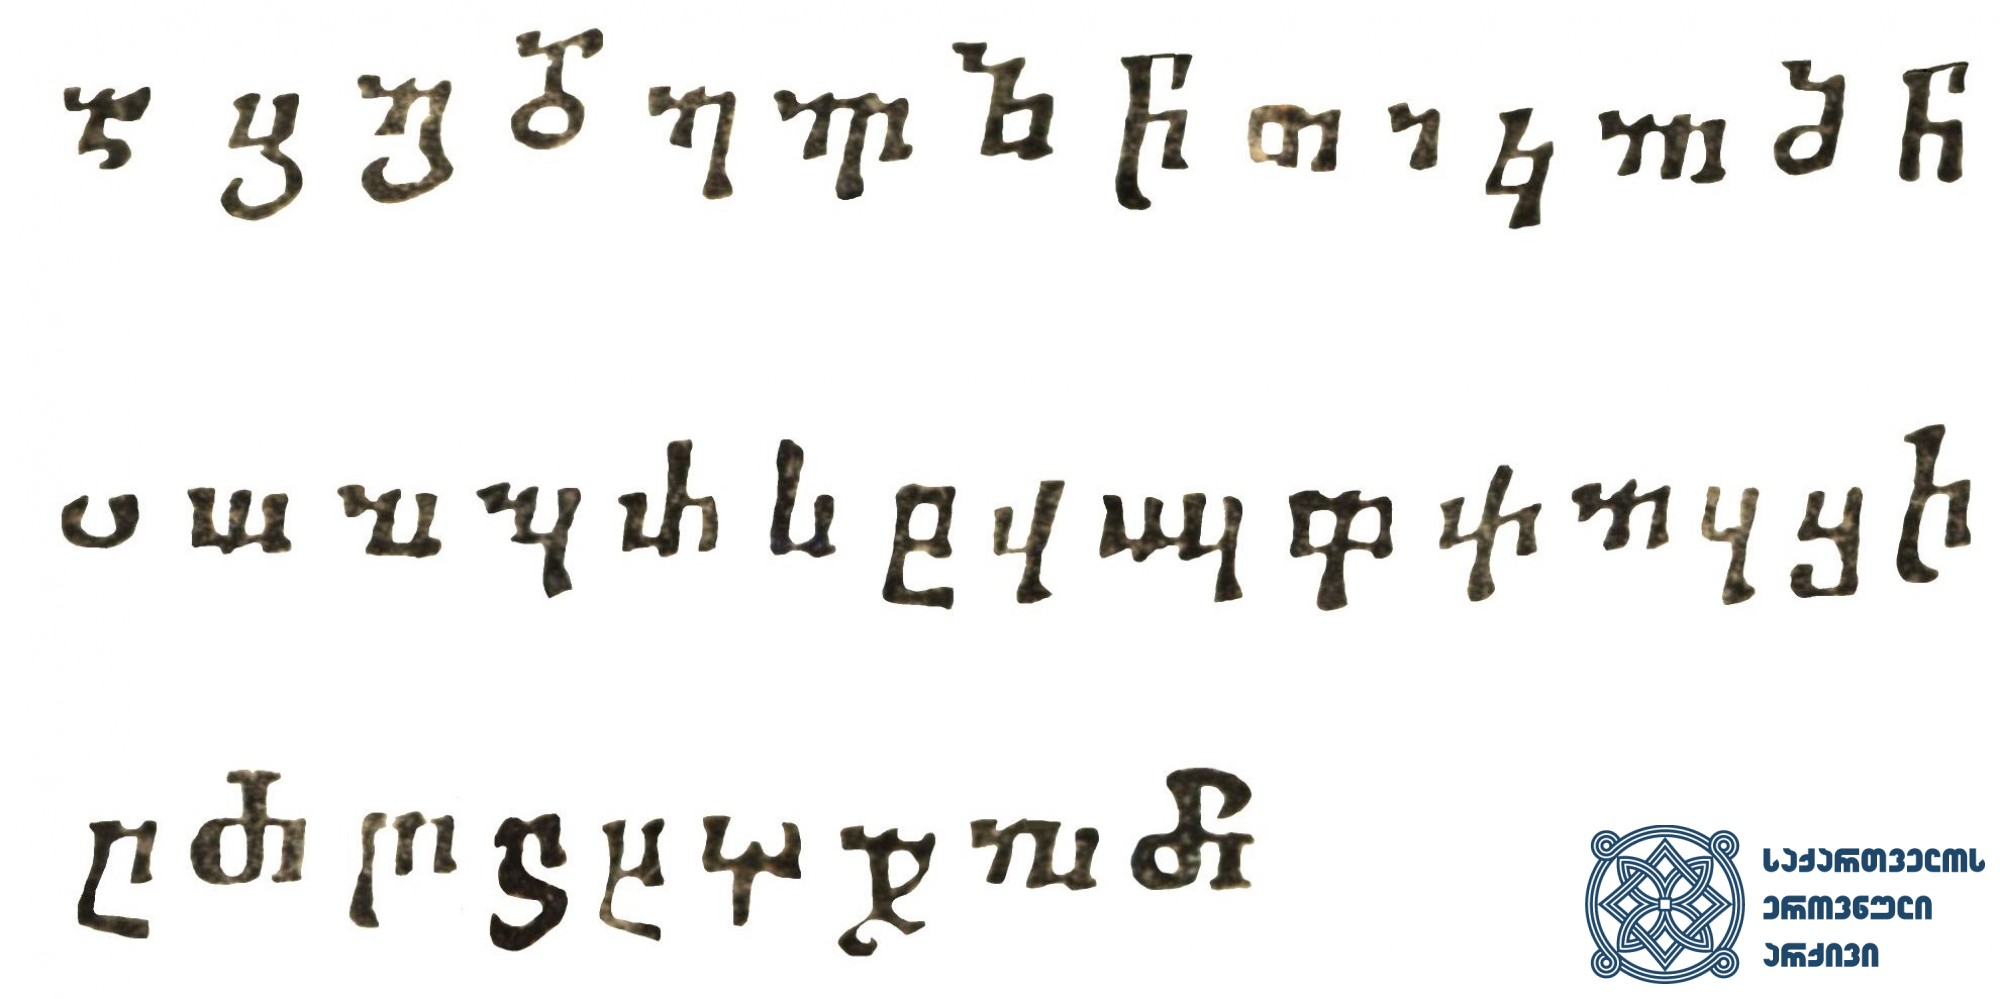 ერეკლე II-ის სტამბაში გამოცემულ წიგნებში გამოყენებული მხედრული შრიფტი <br>
ტფილისი, 1749-1795 <br>
Nuskhuri Type used in the Books published in Erekle’s Printing House <br>
Tfilisi, 1749-1795